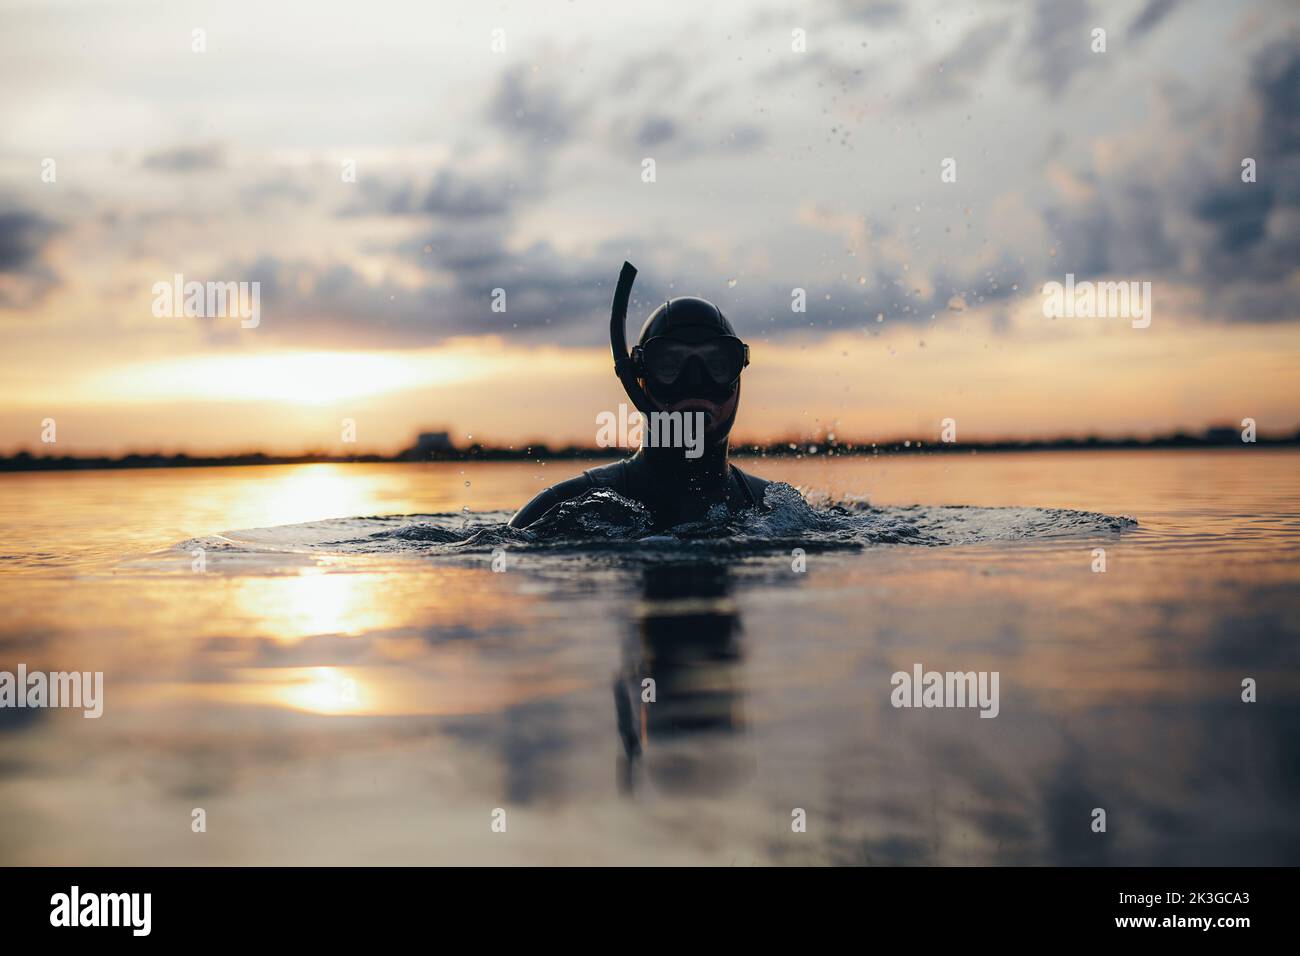 Prise de vue d'un plongeur avec équipement de plongée immergé dans l'eau de mer. Un jeune homme aventureux qui fait de la plongée en apnée au milieu de l'océan. Banque D'Images